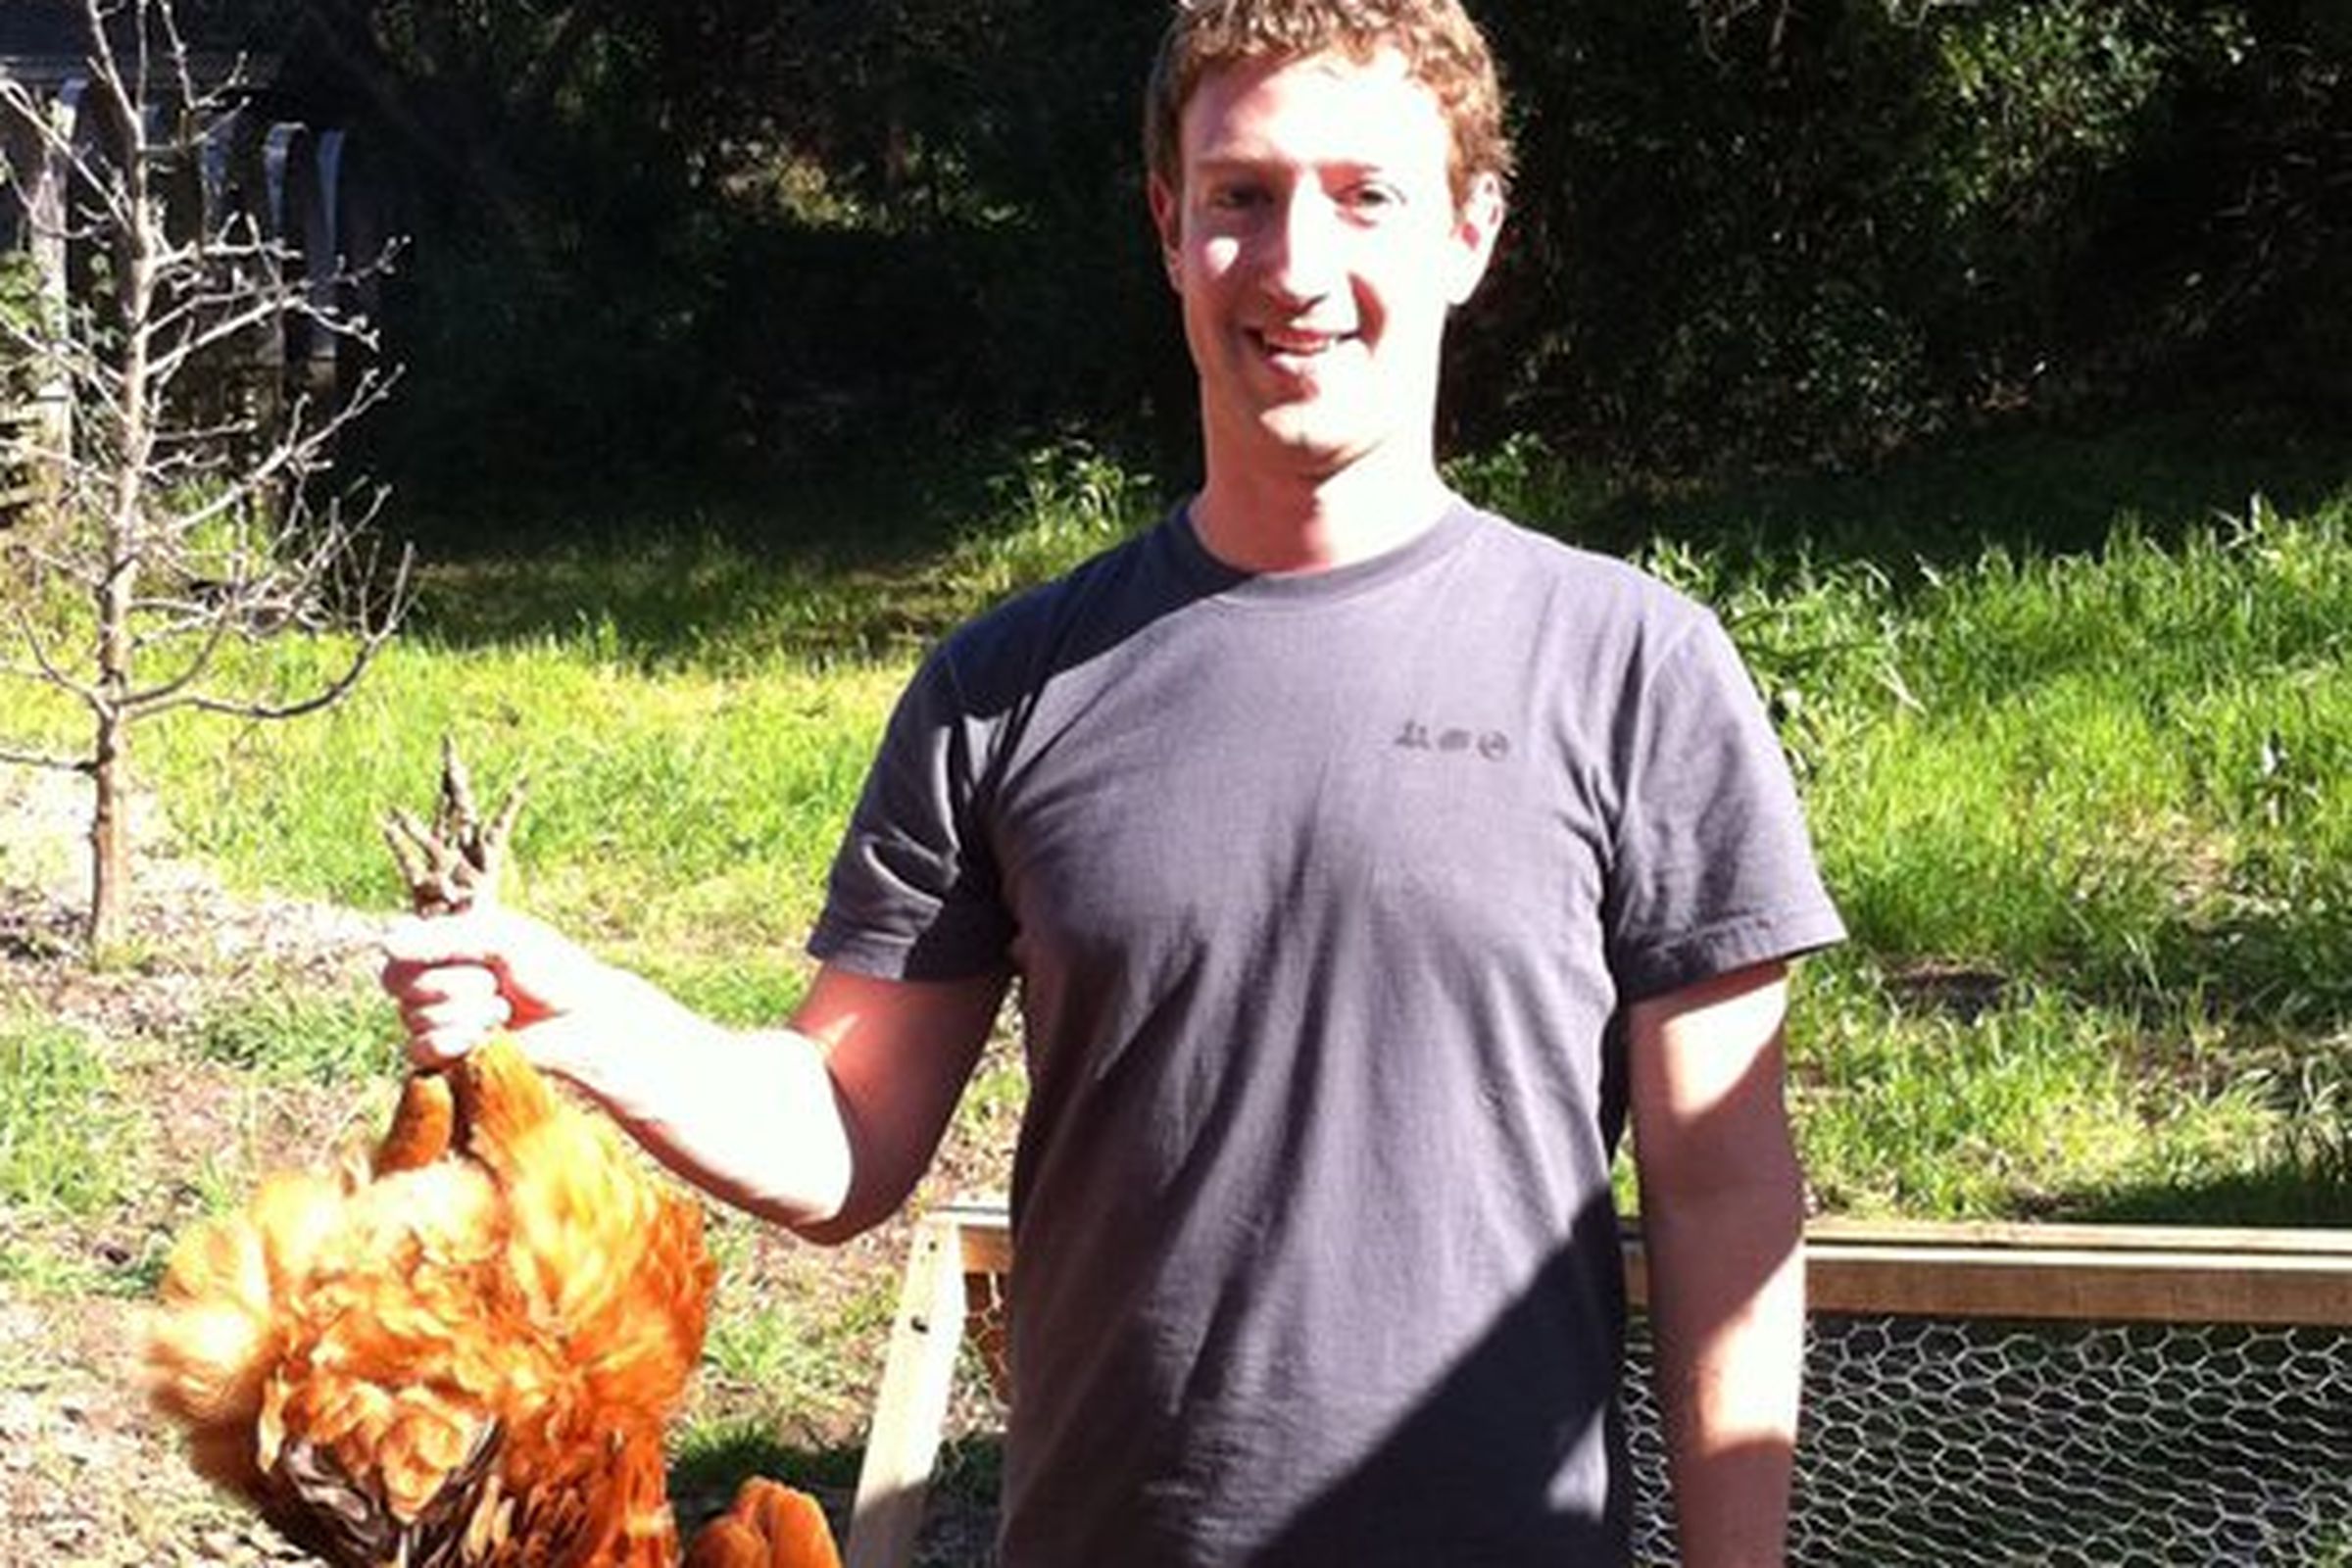 Mark Zuckerberg with Chicken